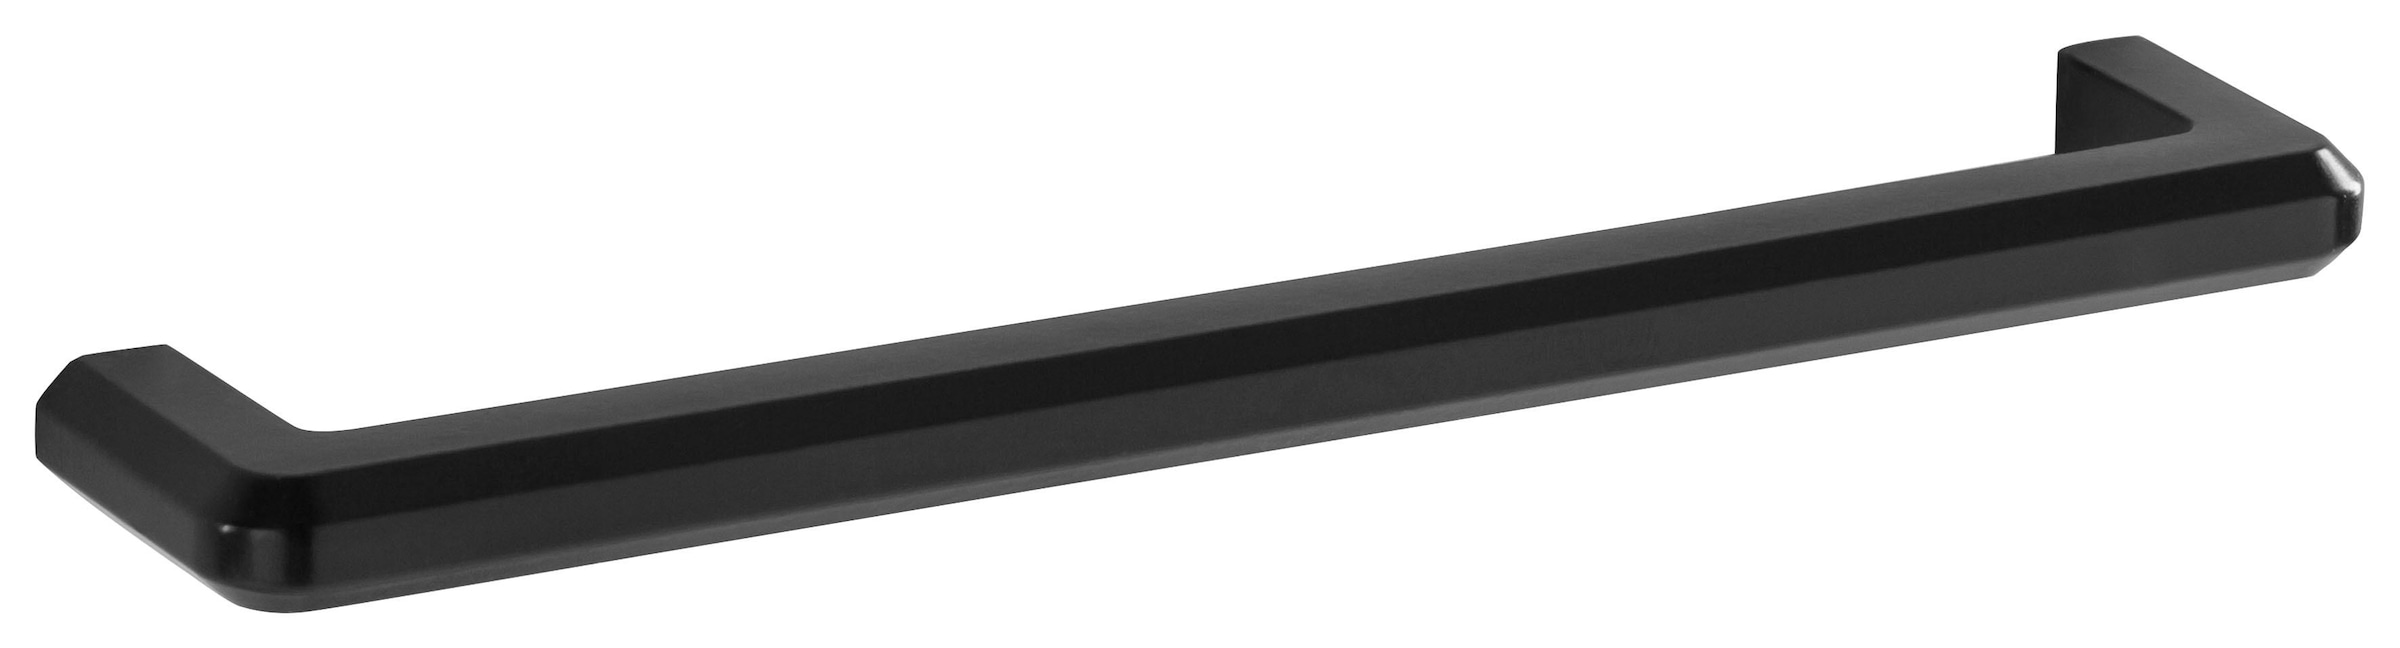 HELD MÖBEL Klapphängeschrank »Tulsa«, 40 cm breit, mit 1 Klappe, schwarzer Metallgriff, MDF Front